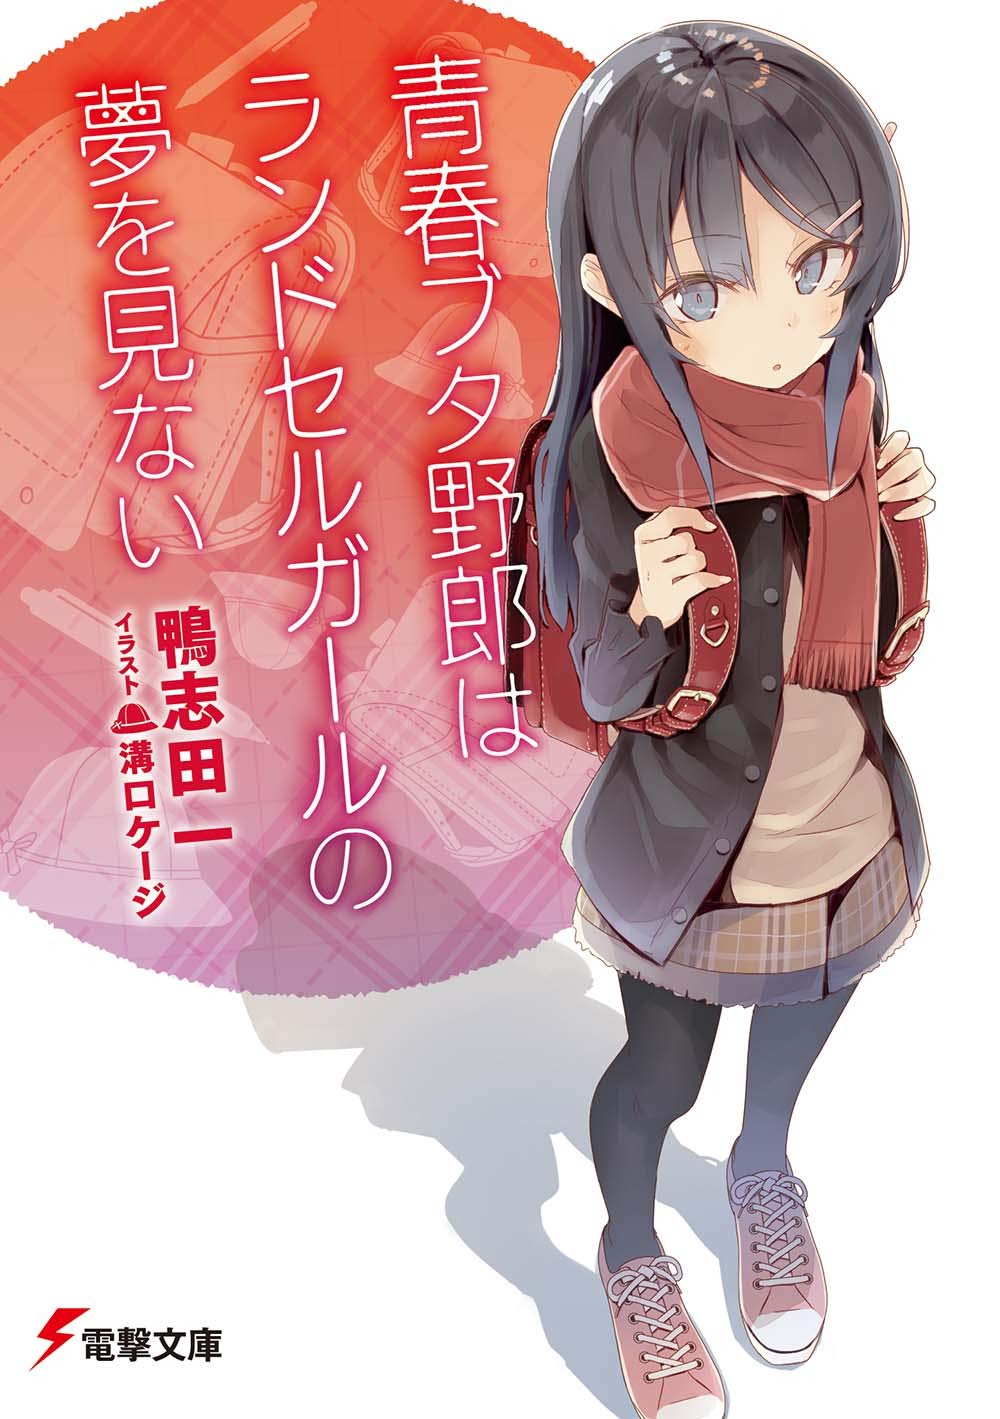 Light Novel Volume 9 | Seishun Buta Yarou wa Bunny Girl Senpai no Yume